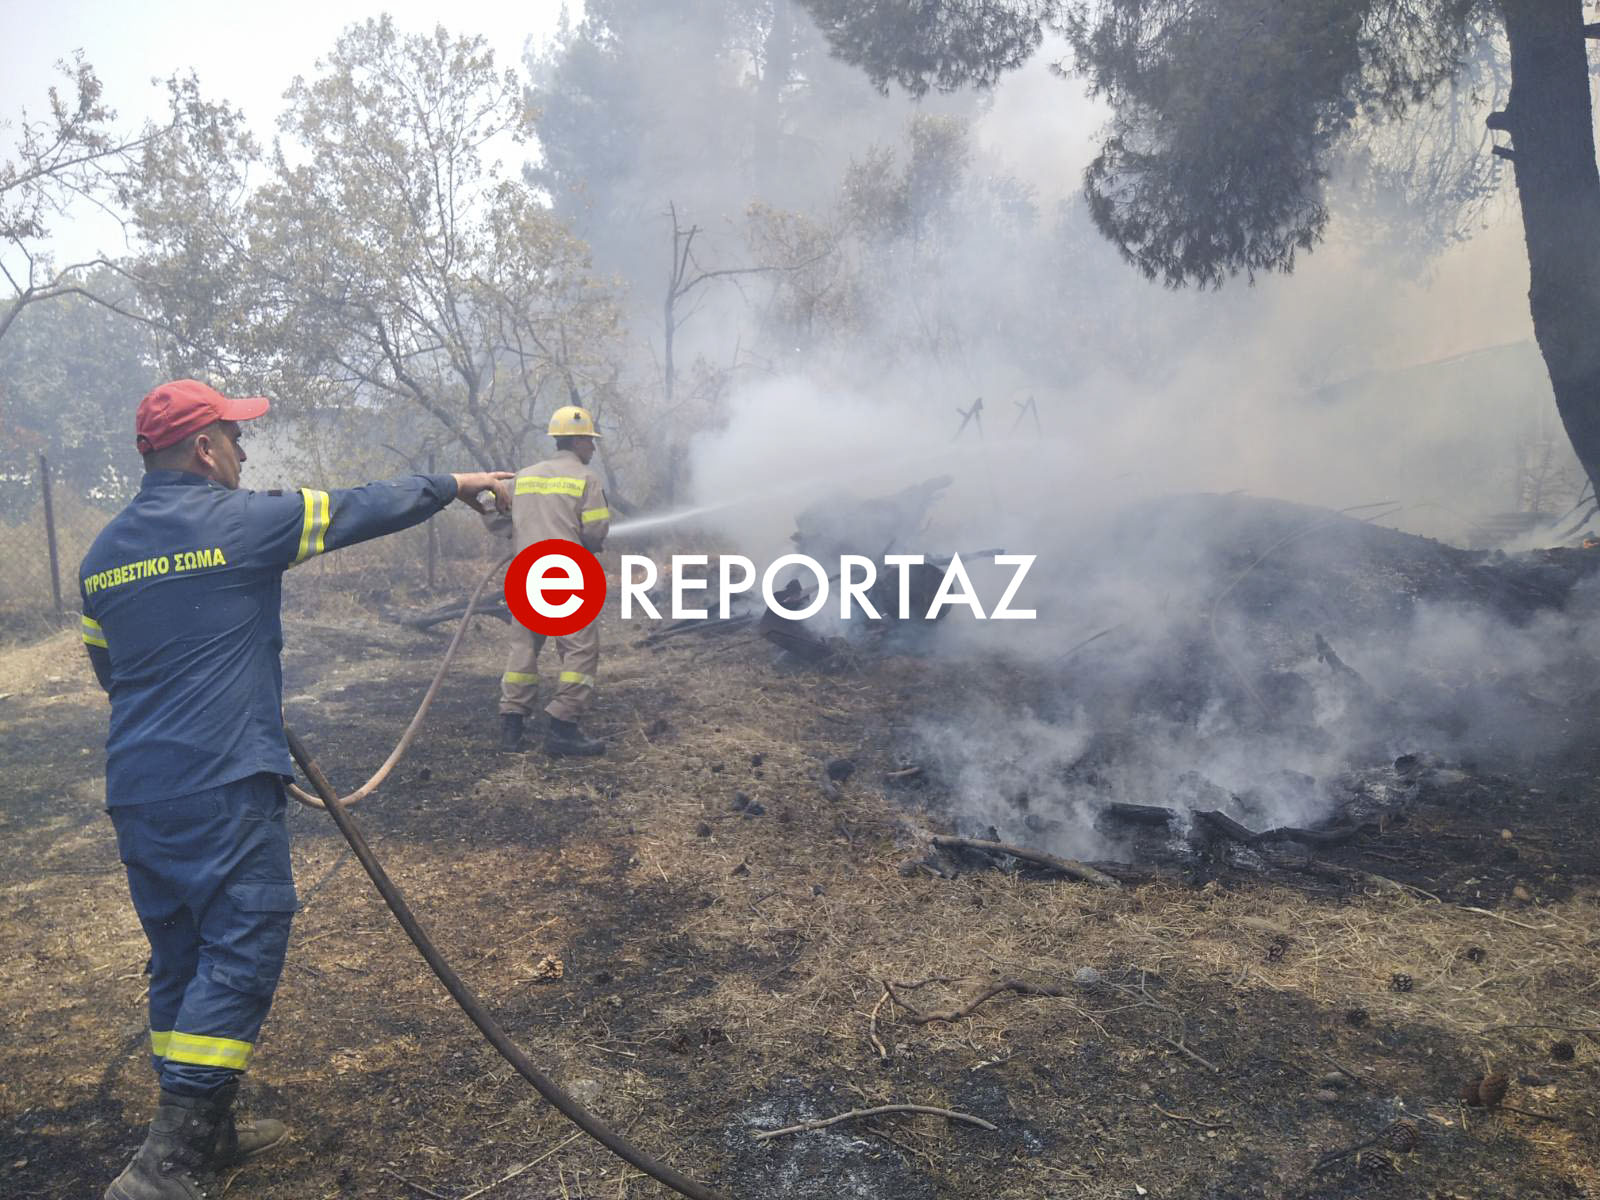 Κάηκαν σπίτια και αυτοκίνητα σε Ροδόπολη και Διόνυσο - Μάχη με τις αναζωπυρώσεις - αυτοψία του ereportaz.gr